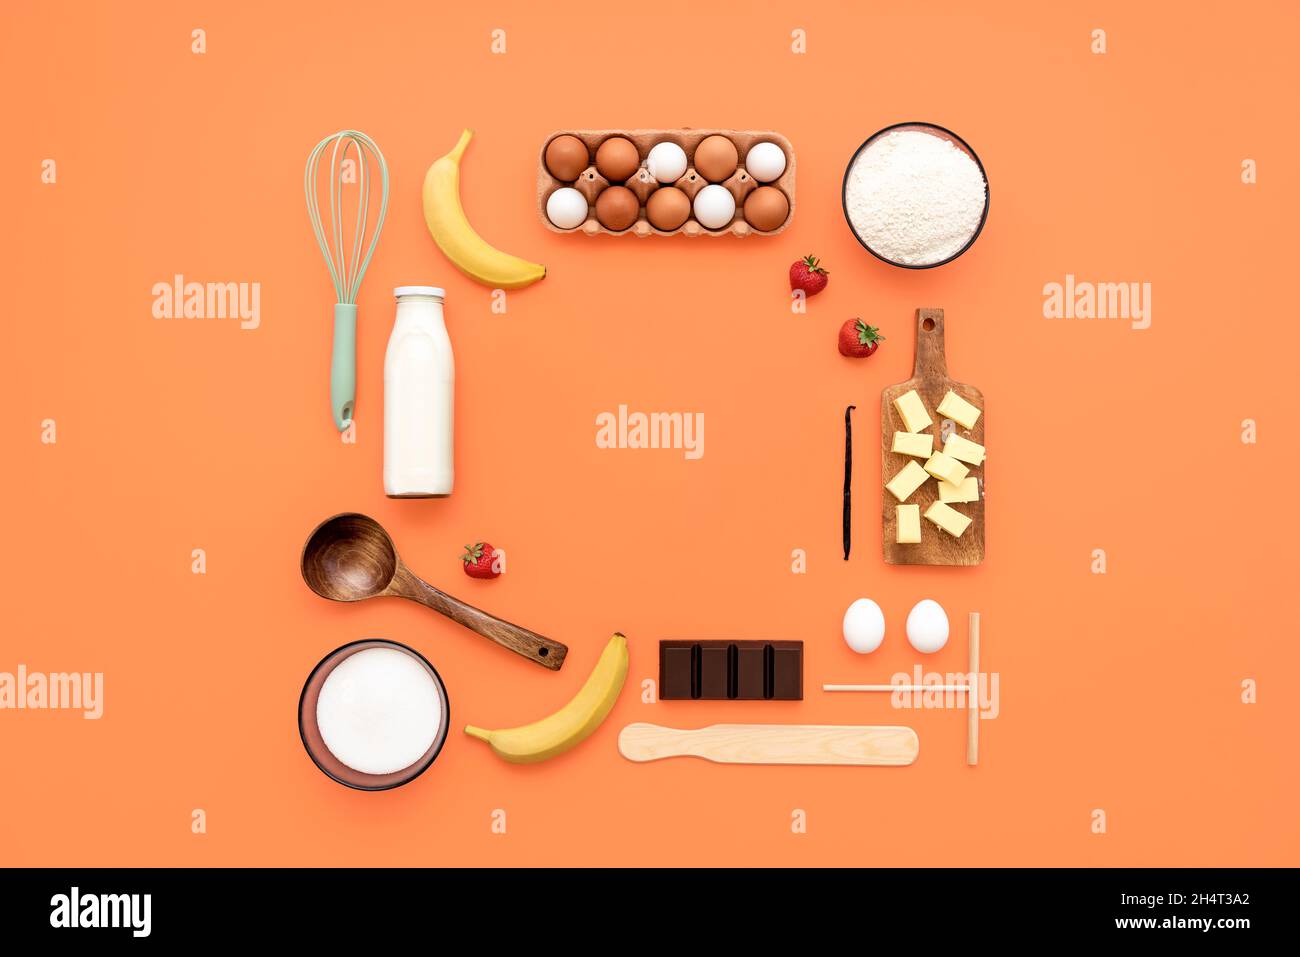 Cibo lavorato a maglia su sfondo arancione con ingredienti crepes e utensili da cucina. Fare crepes piatto, utensili da cucina, e gli ingredienti disposti con Foto Stock